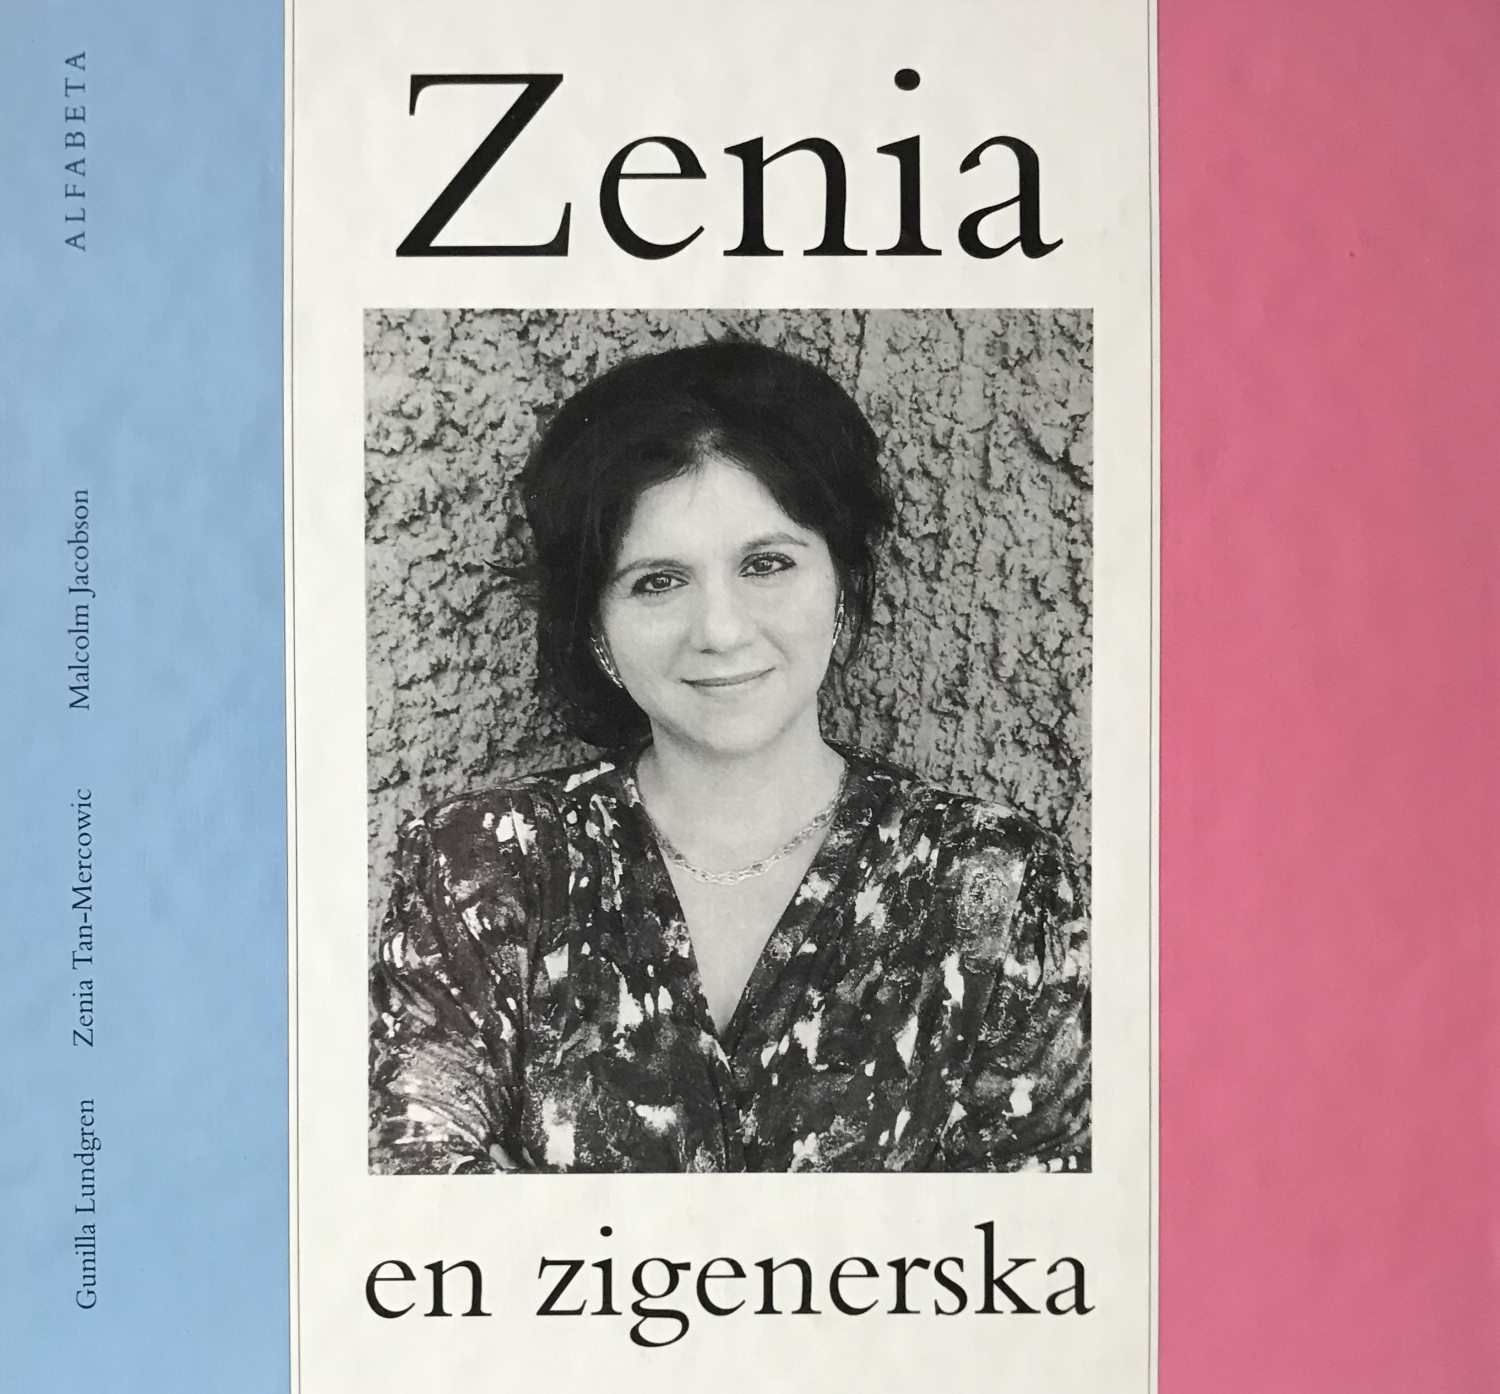 Zenia Gunilla Lundgren